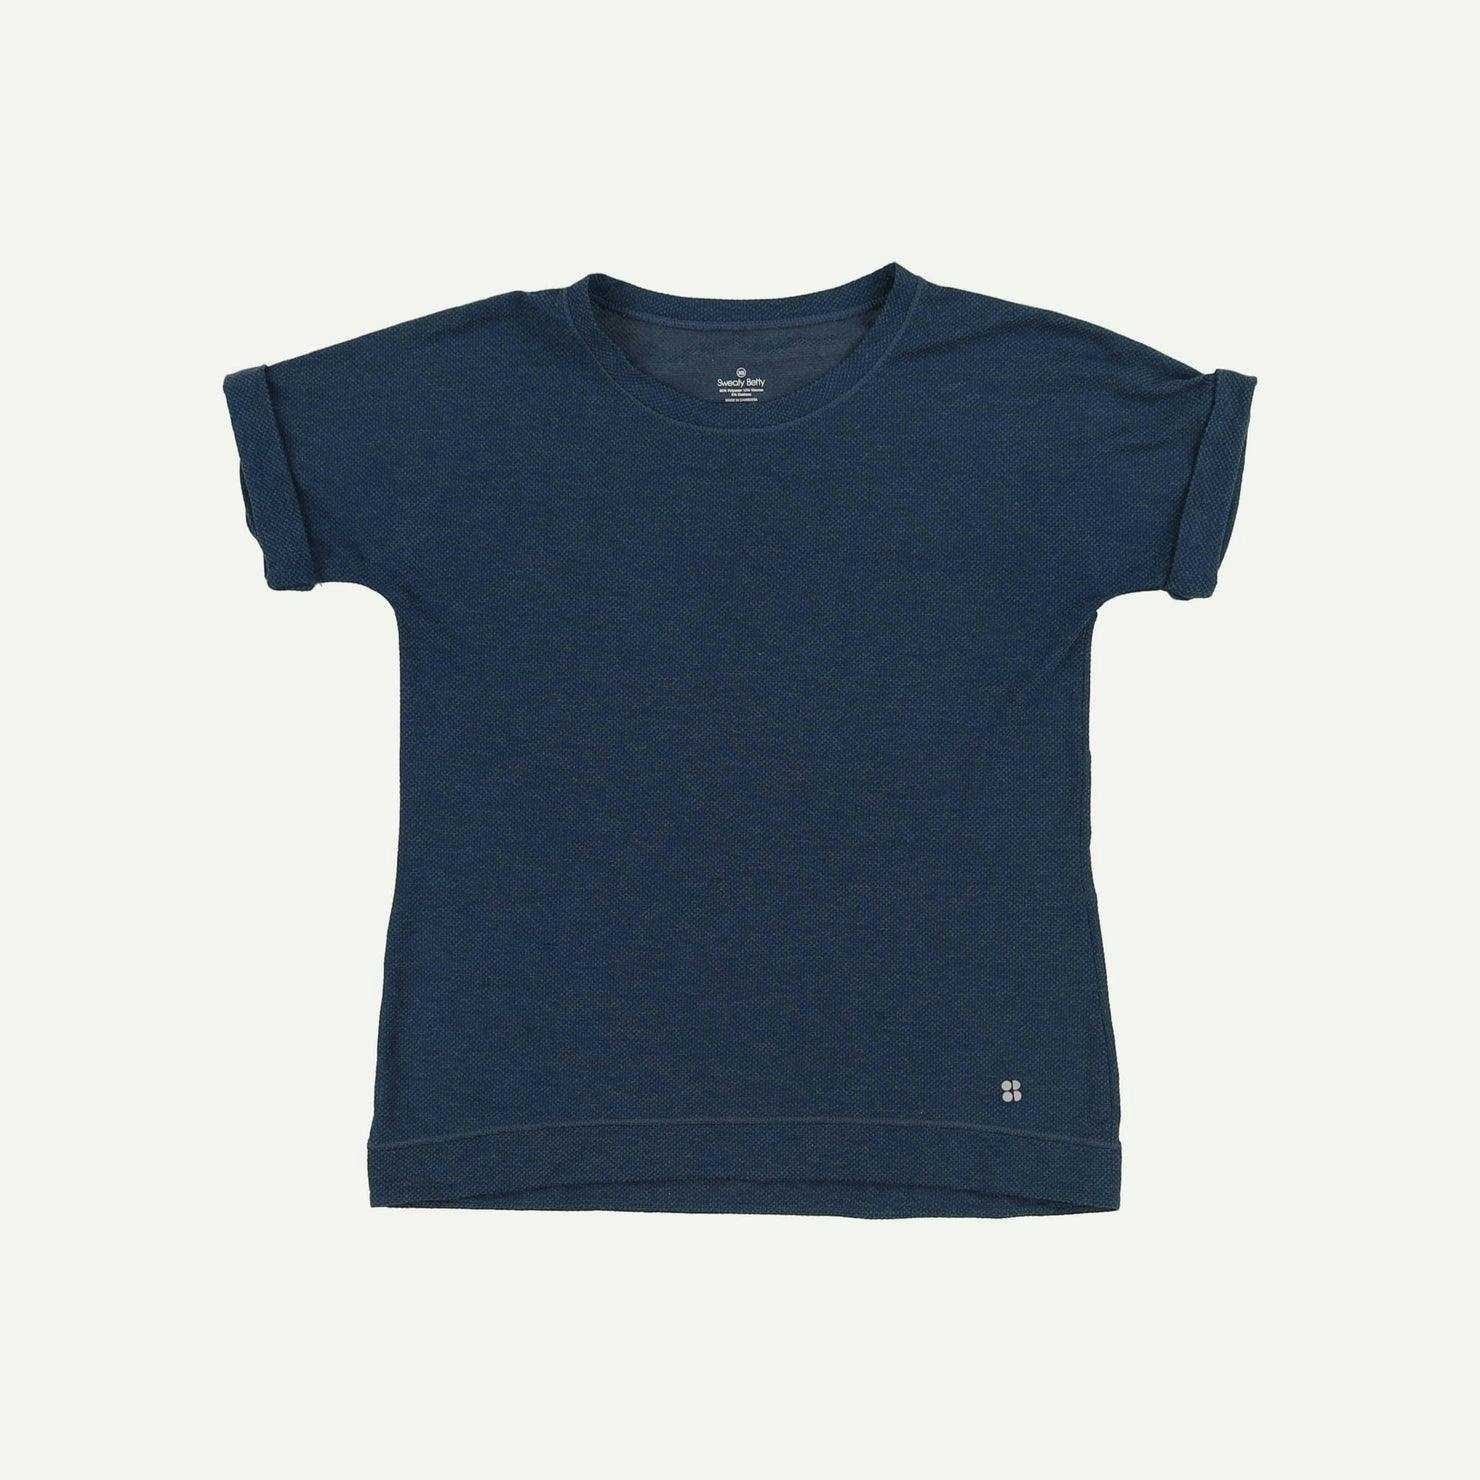 Sweaty Betty Pre-loved Blue T-shirt